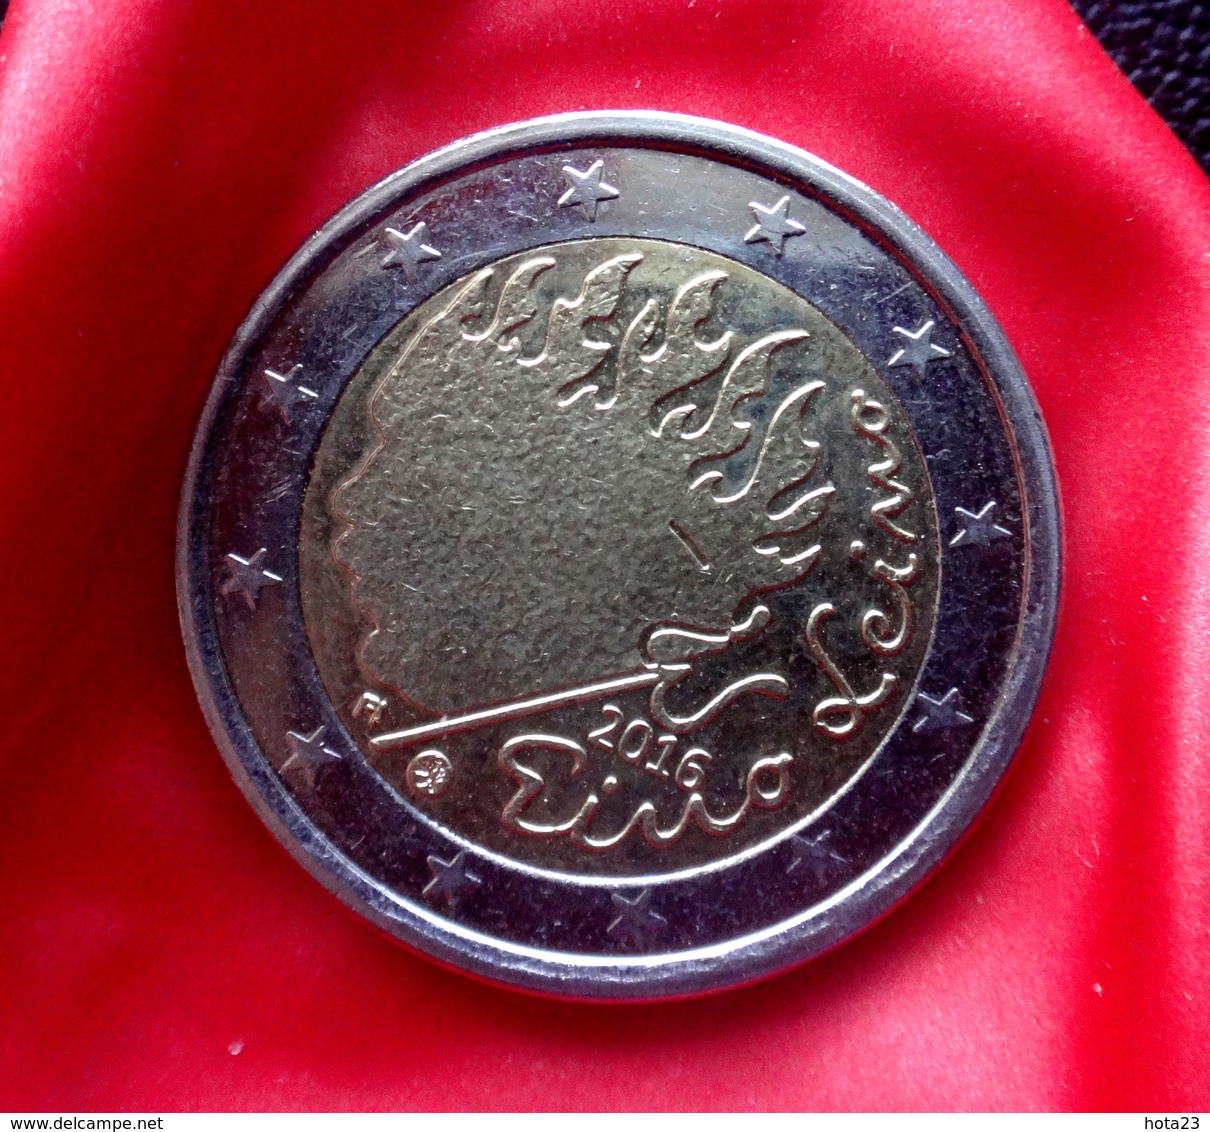 Finland 2016 - 2 Euro Comm - Finnish Writer & Lyricist - Eino Leino Coin  CIRCULATED - Finlandía